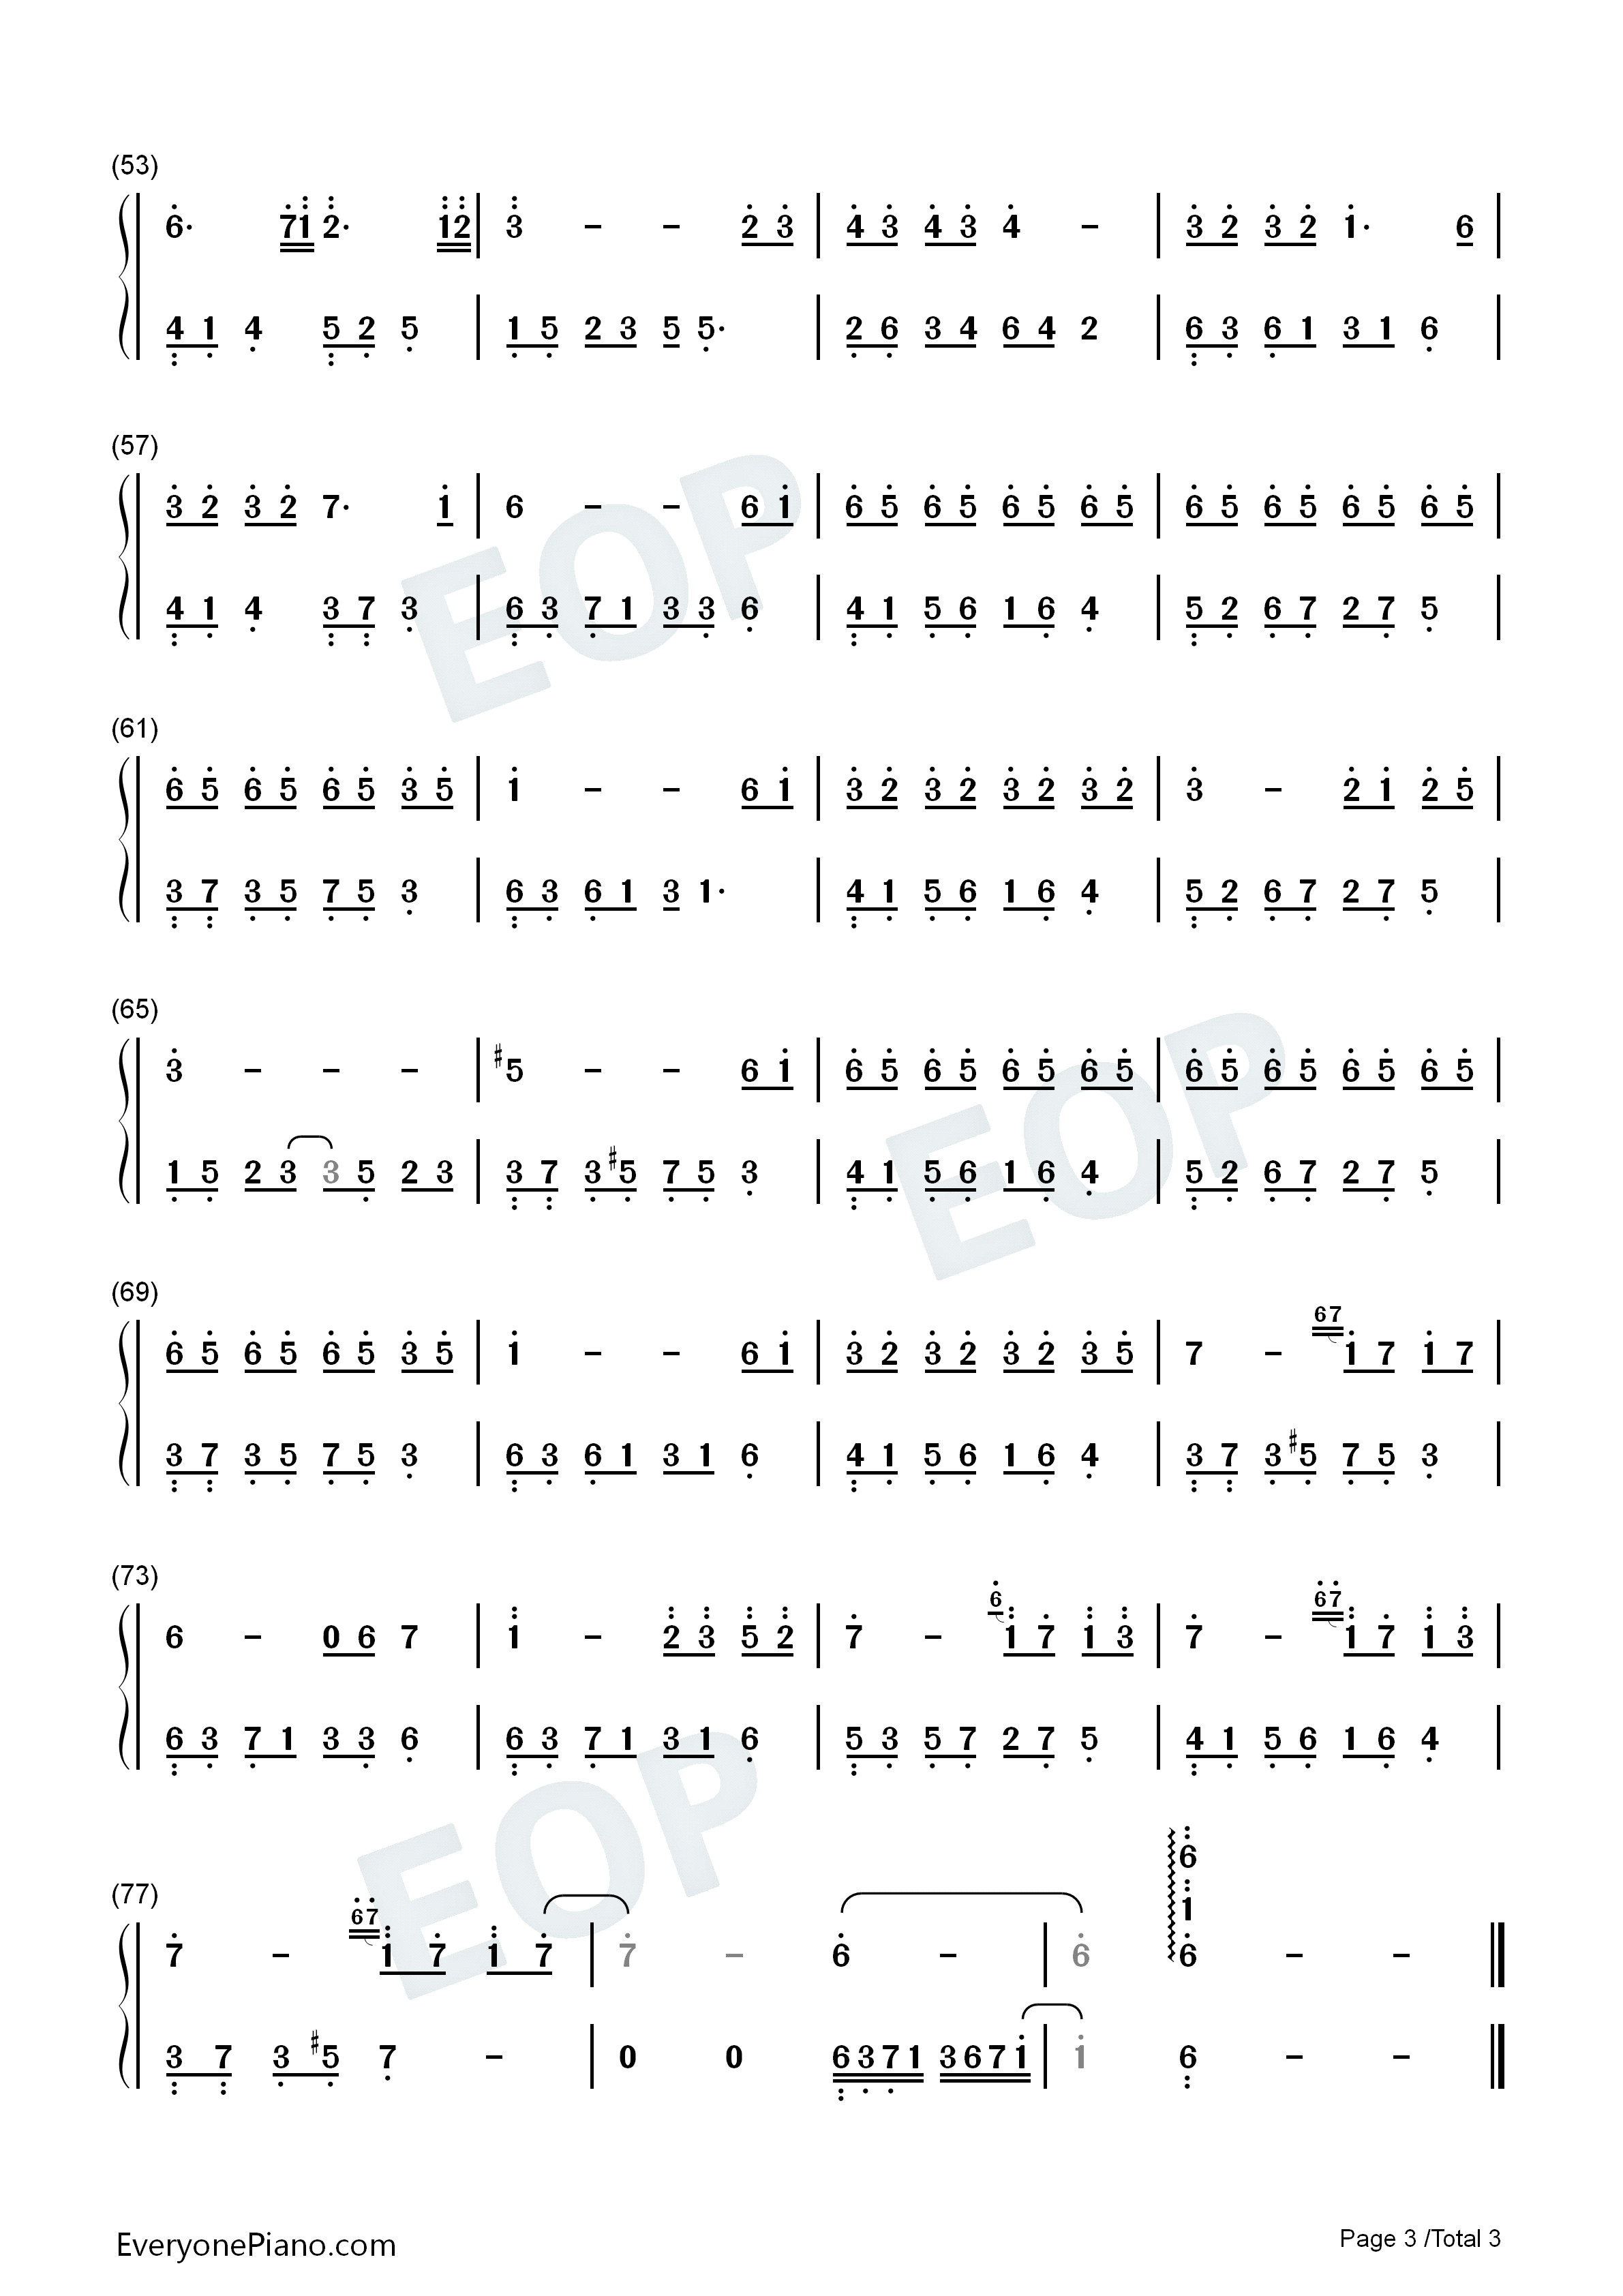 初学钢琴曲简单的谱子(1-5l的简单介绍